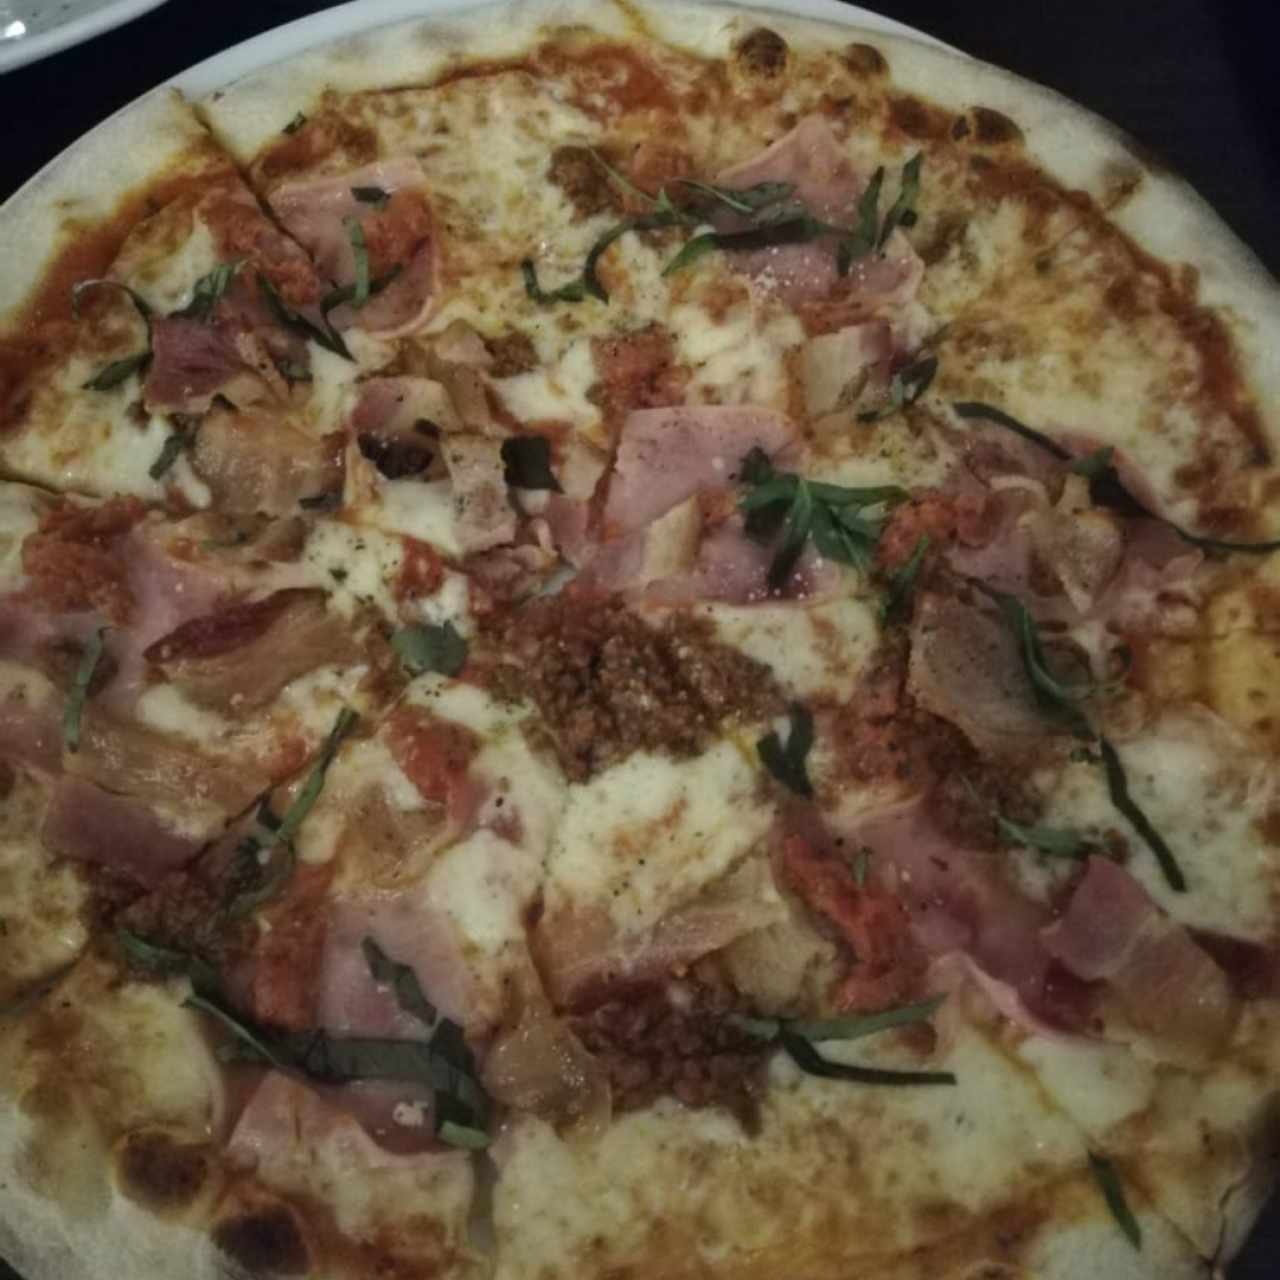 Pizzas - Carnivora